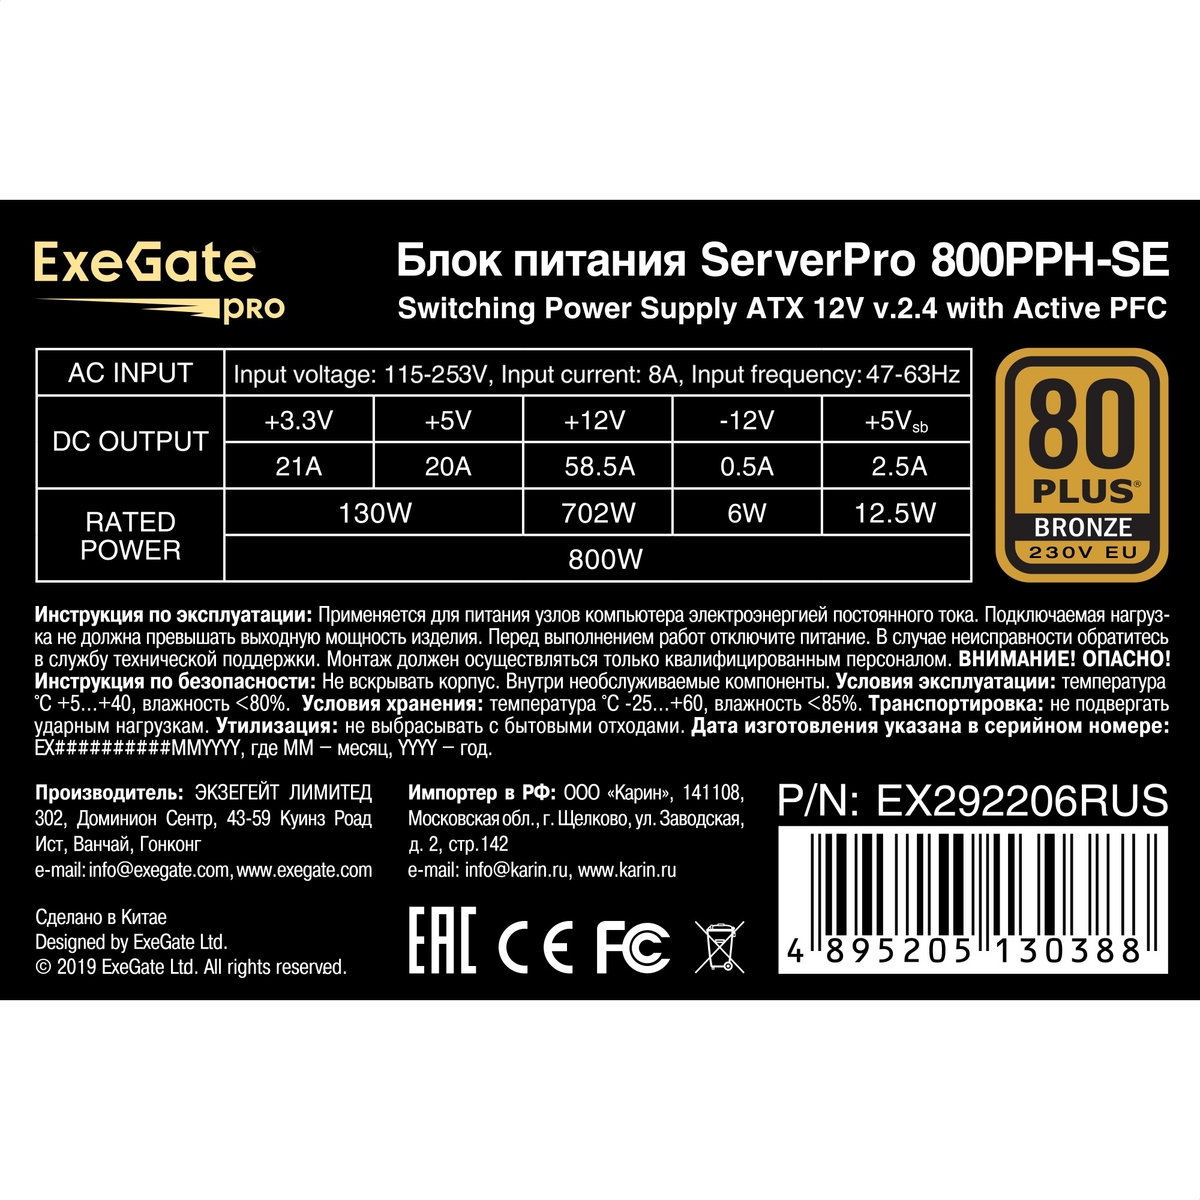   800W ExeGate ServerPRO 80 PLUS<sup></sup> Bronze 800PPH-SE